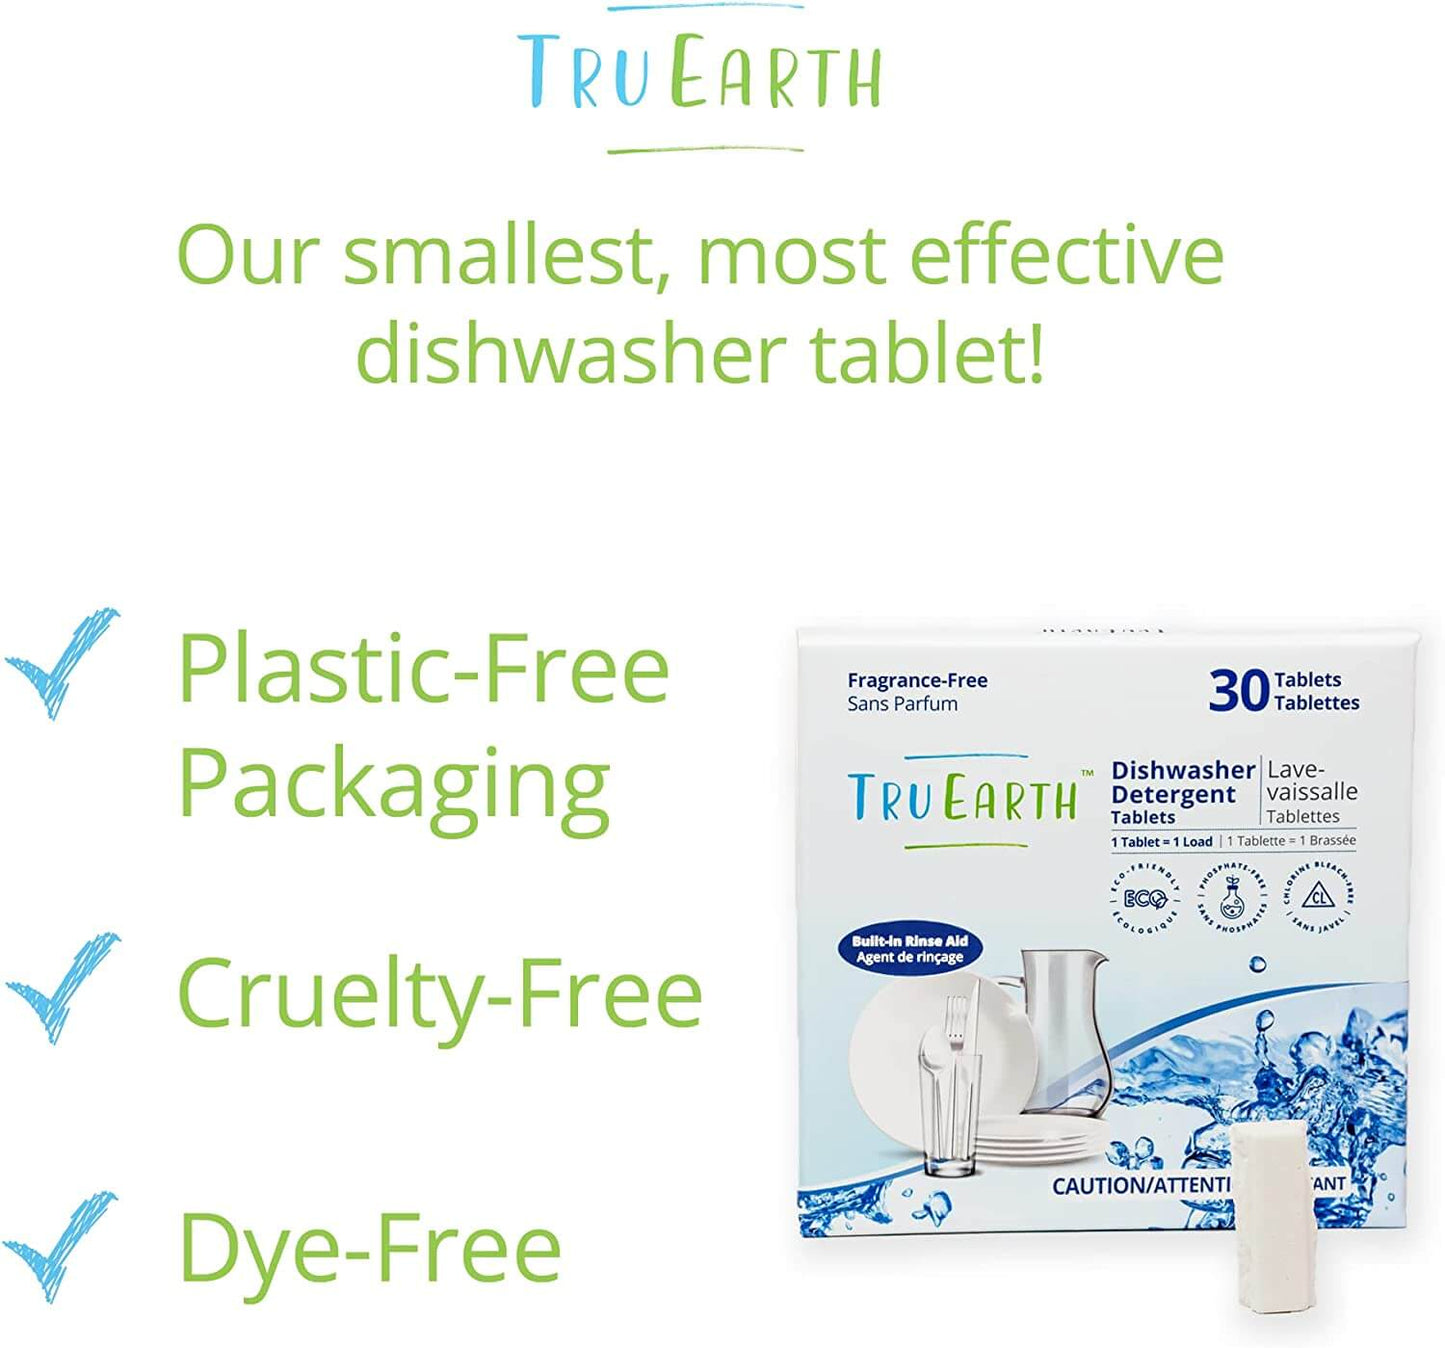 Tru Earth Dishwasher Detergent Tablets - benefits